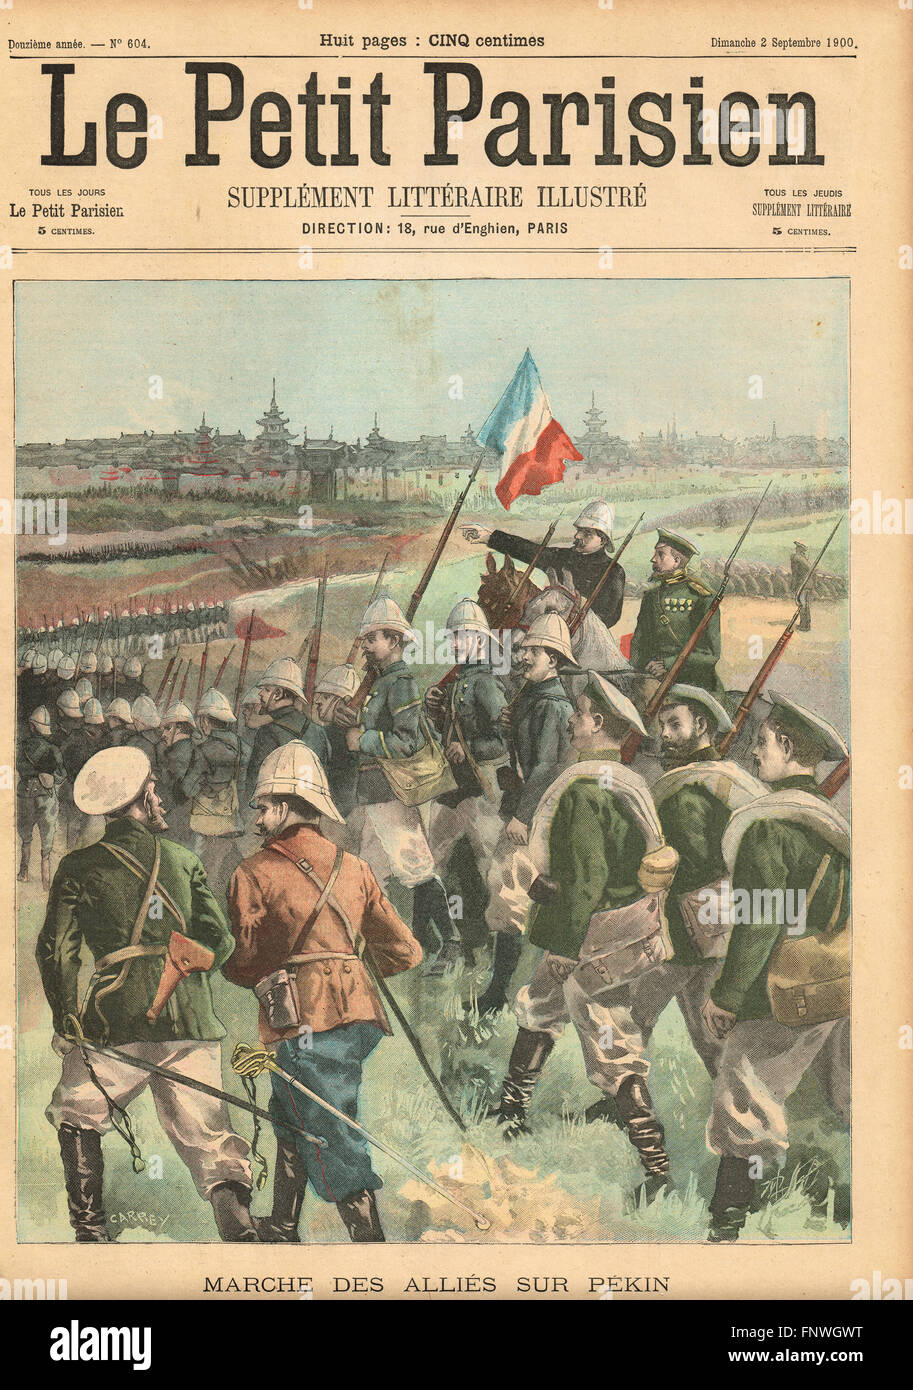 Die Boxer-Rebellion-Alliierten marschieren auf Peking. Französische illustrierte Zeitung Le Petit Parisien Illustration Stockfoto